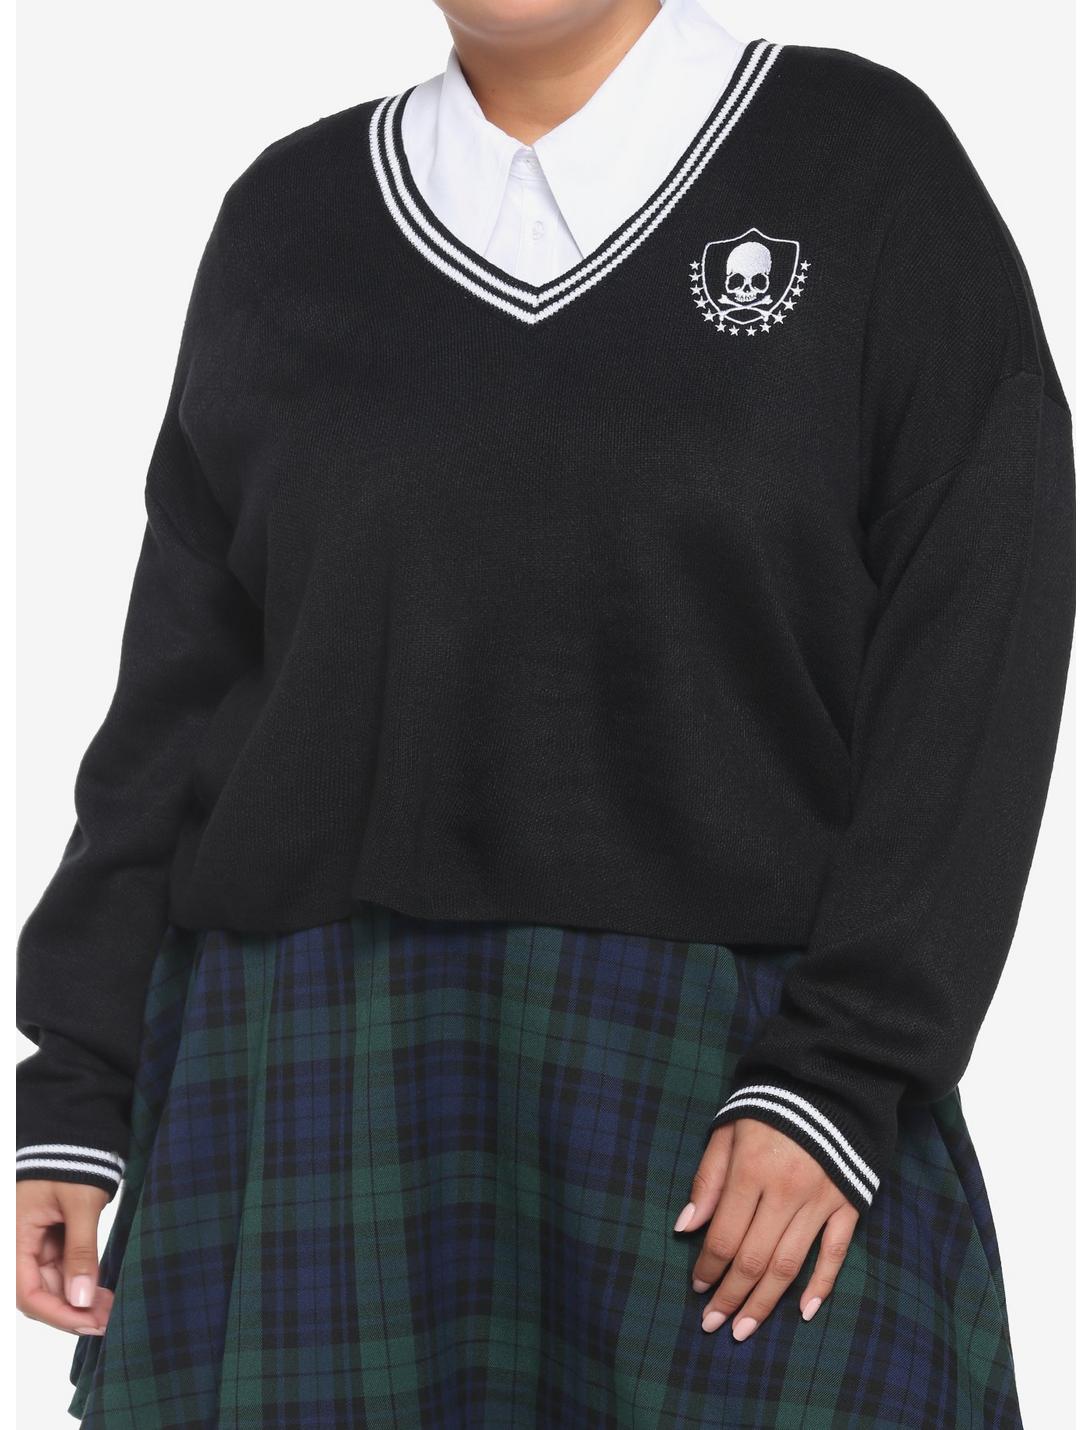 Skull Crest V-Neck Girls Sweater Plus Size, BLACK, hi-res